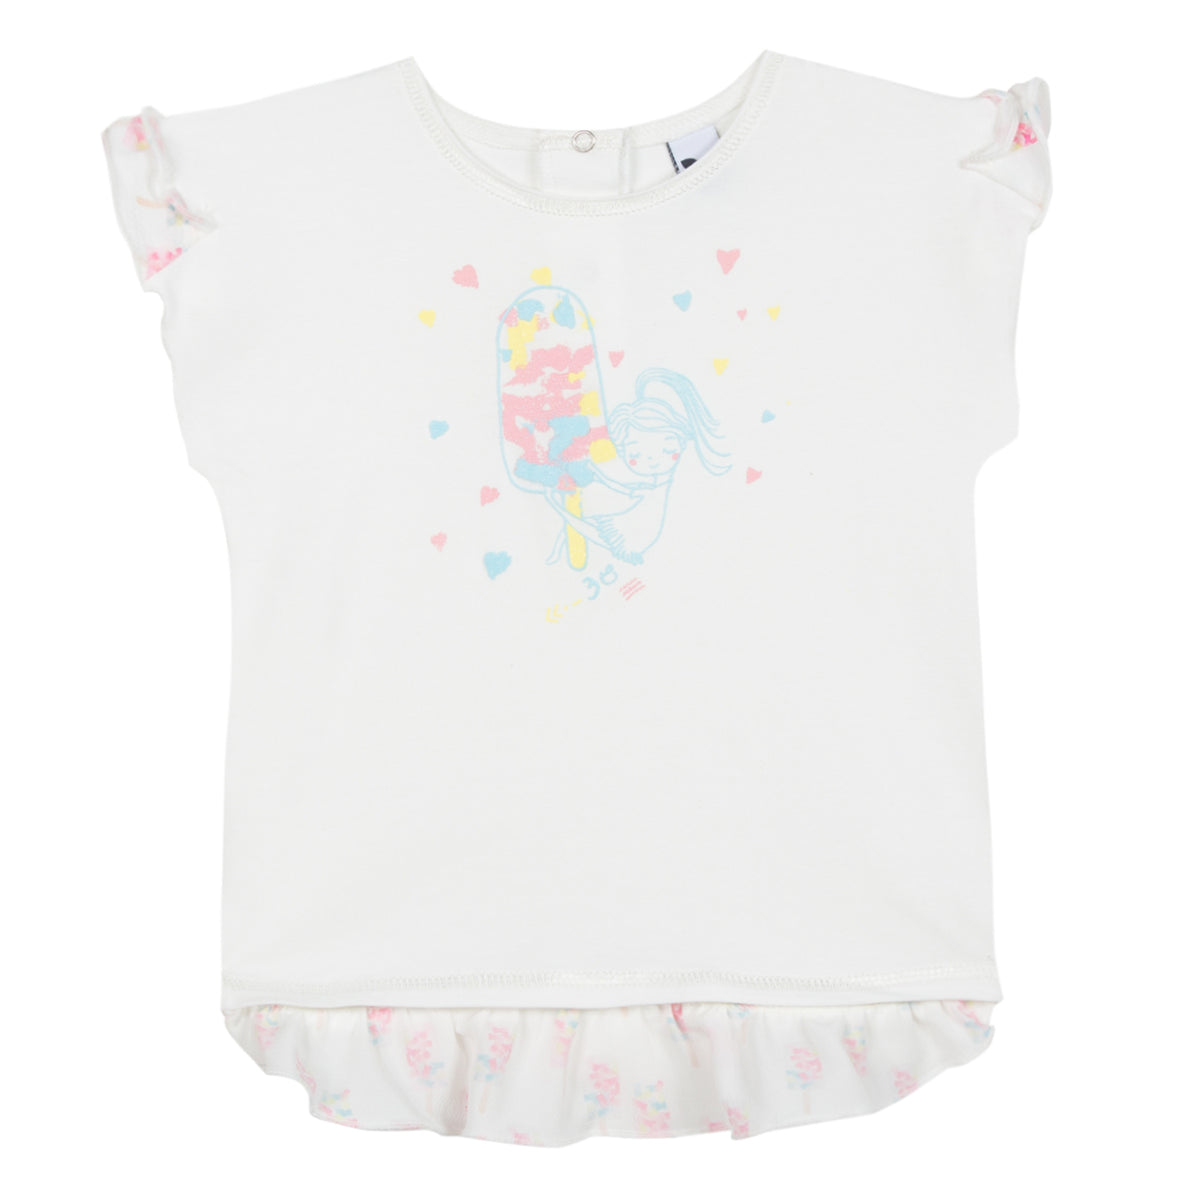 Baby & Toddler Girls Ice- Cream Print T-Shirt